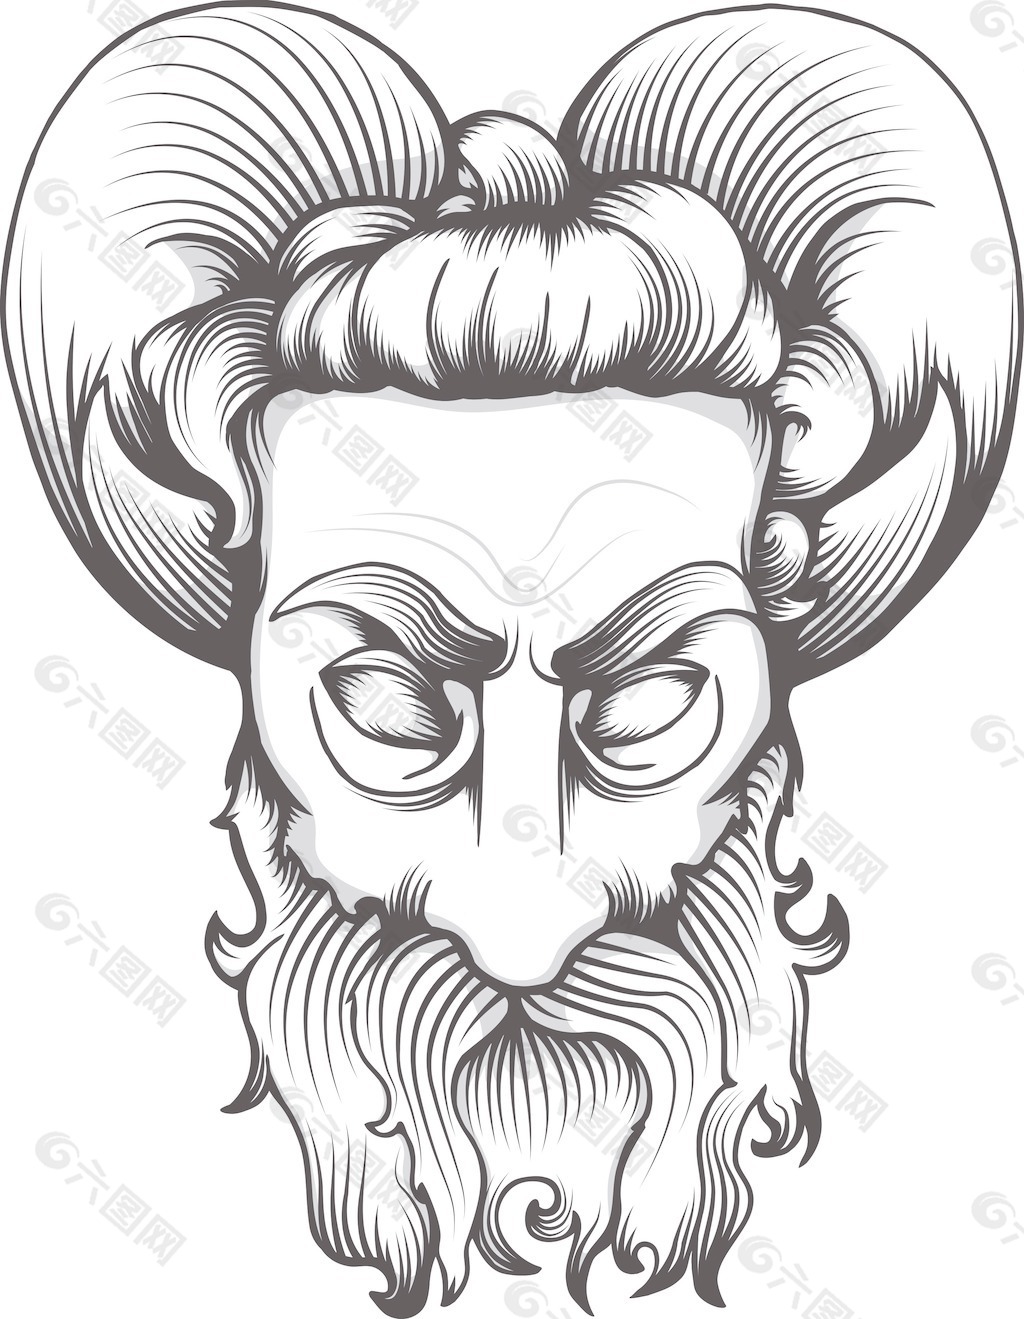 邪恶的 表情符号 魔鬼 - Pixabay上的免费图片 - Pixabay